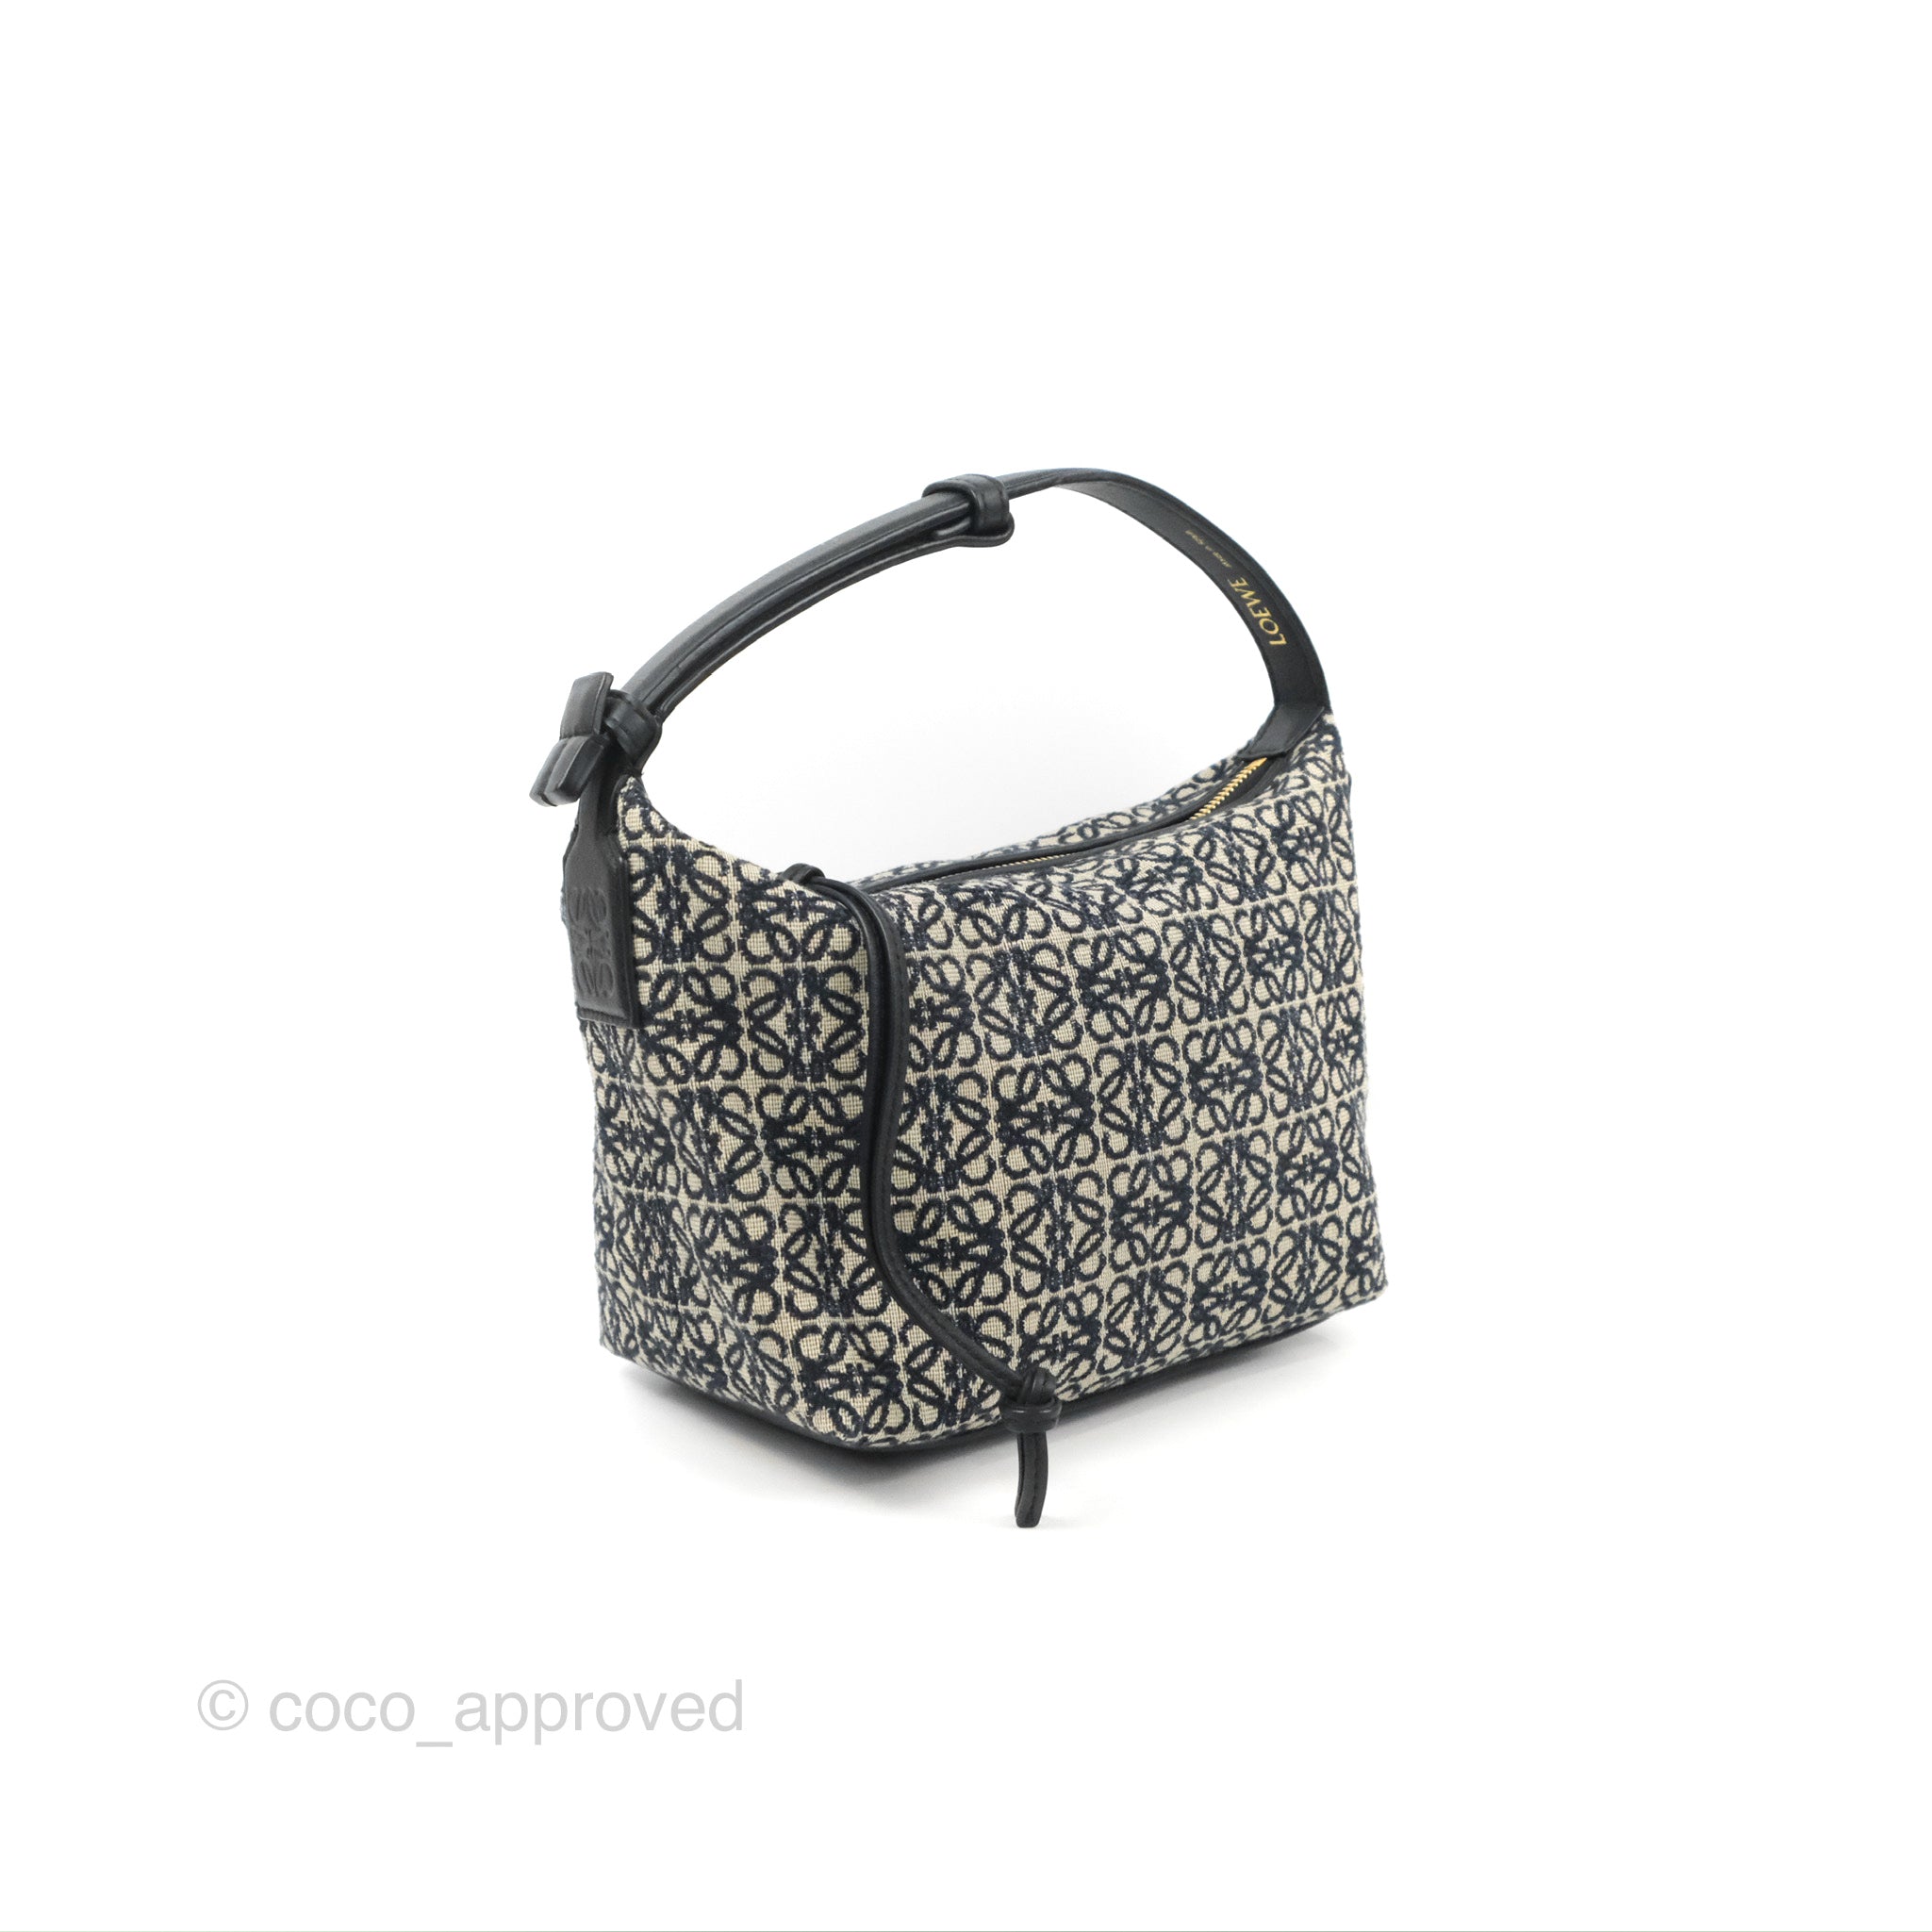 Loewe Cubi Anagram Jacquard and Leather Shoulder Bag